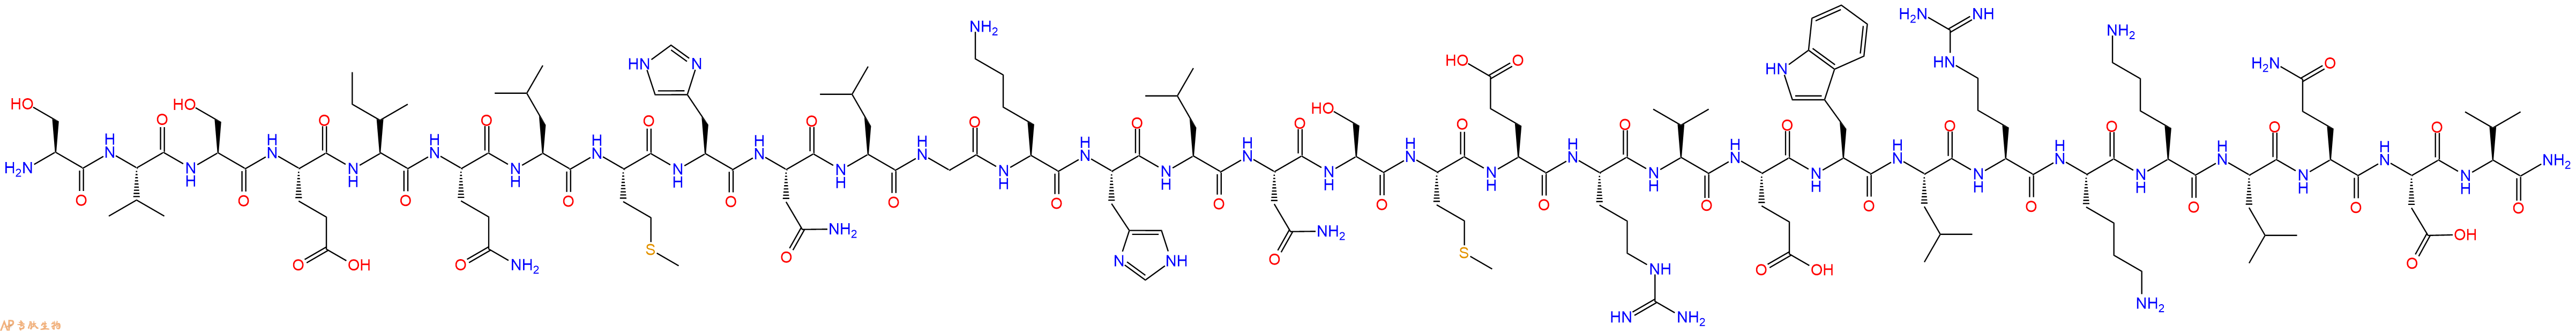 专肽生物产品甲状旁腺激素 pTH (1-31) amide (human)173833-08-4